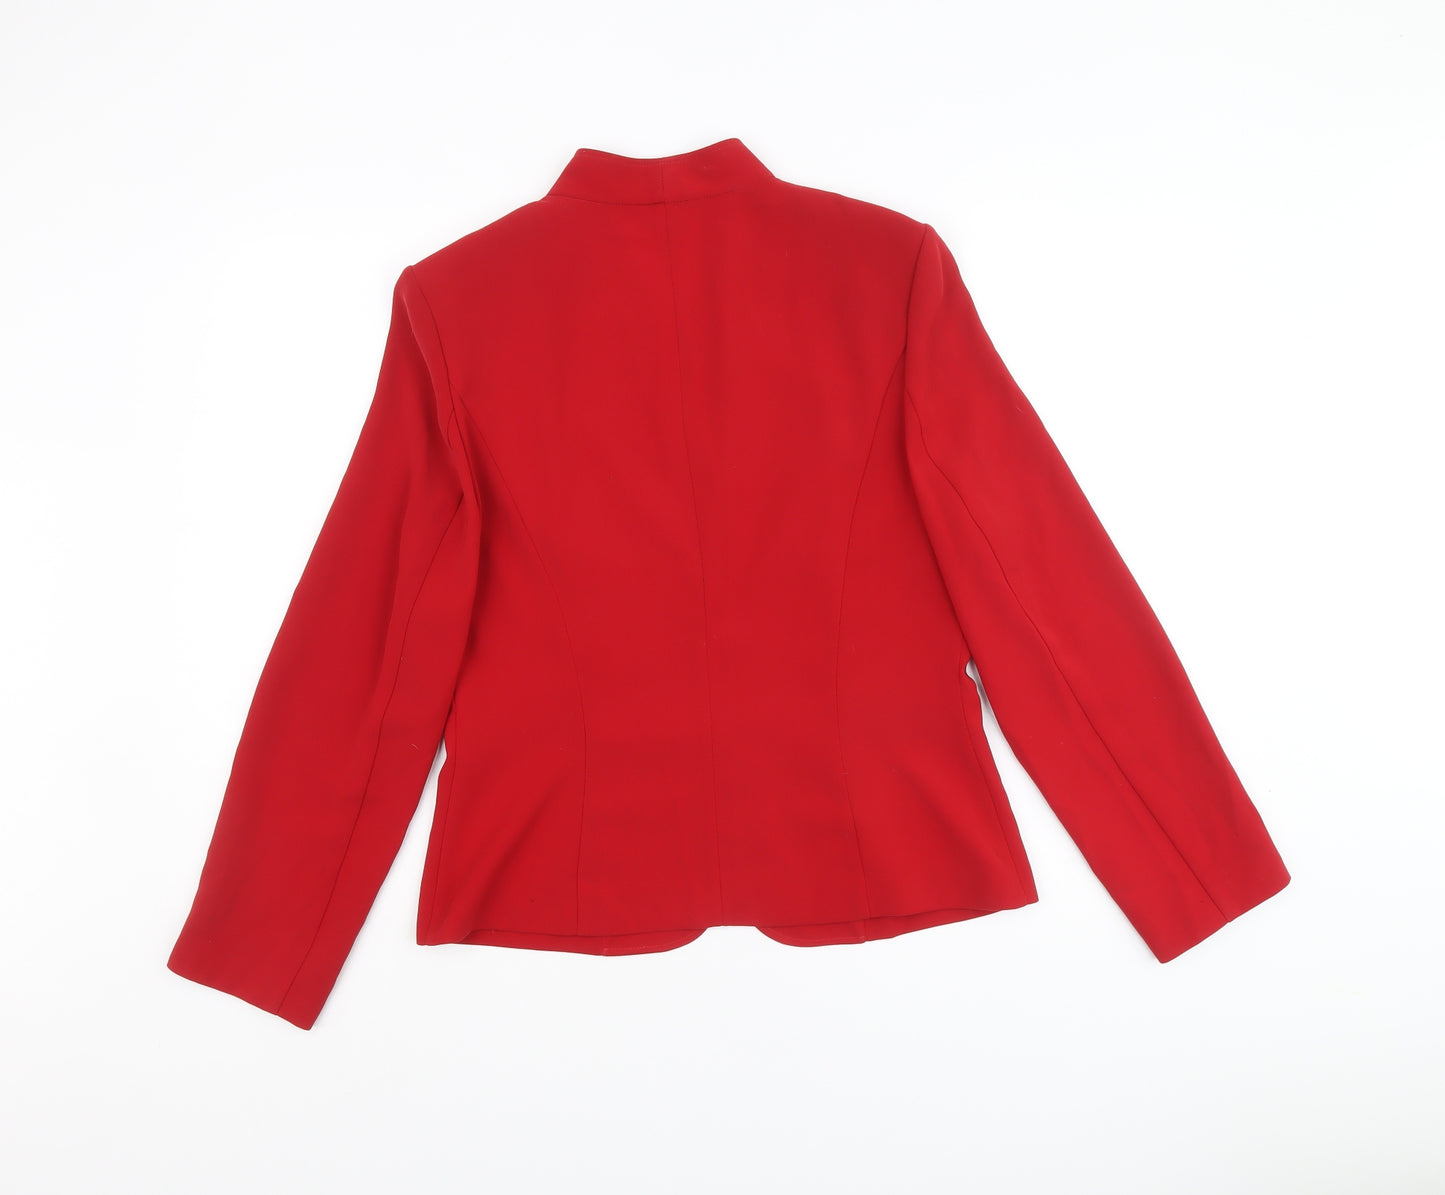 Vera Mont Womens Red Jacket Blazer Size 14 Hook & Eye